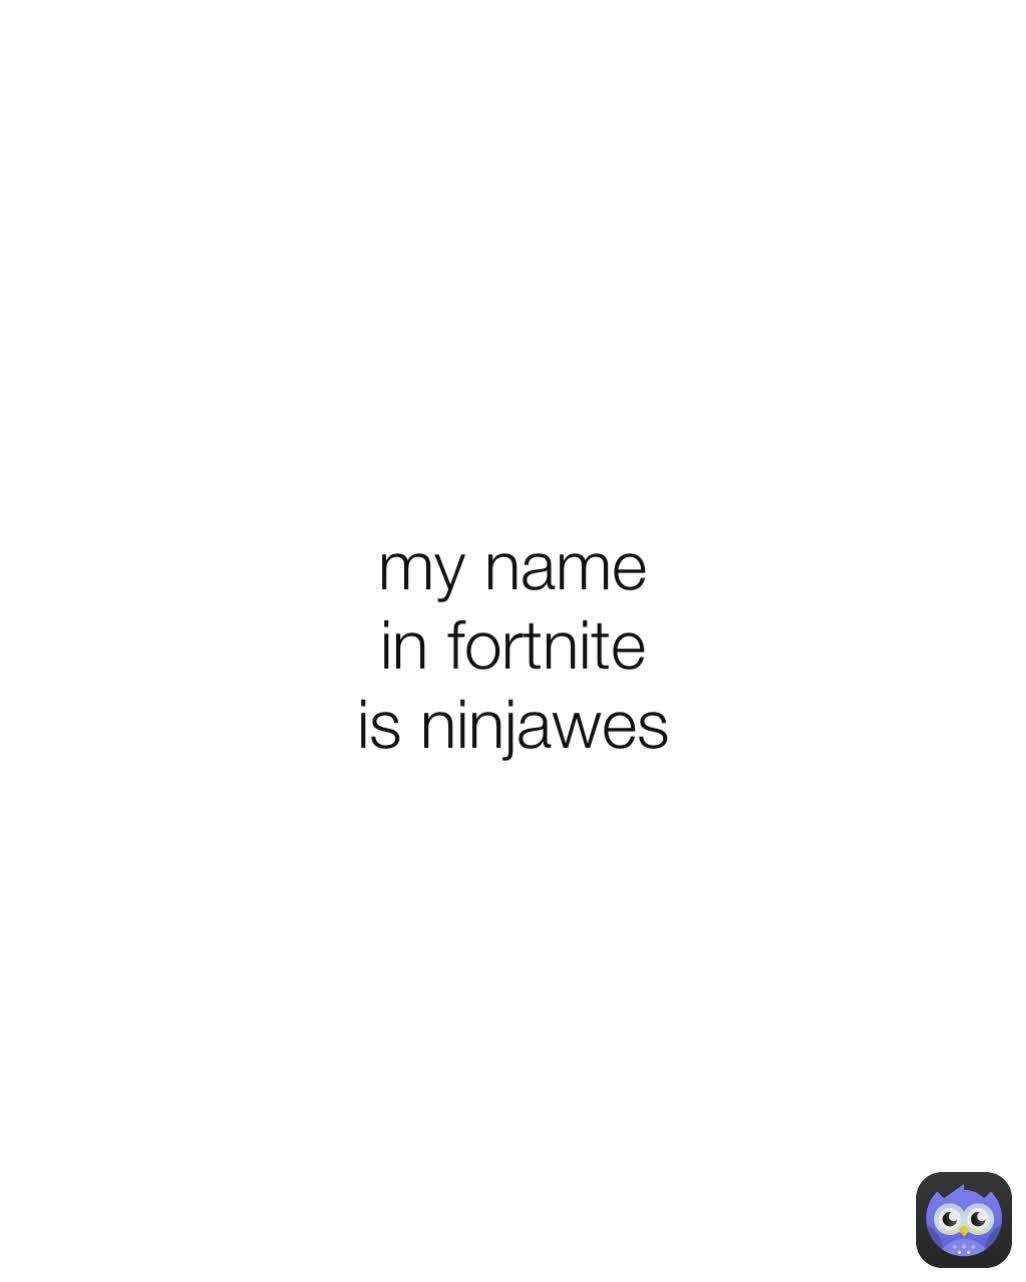 my name in fortnite is ninjawes